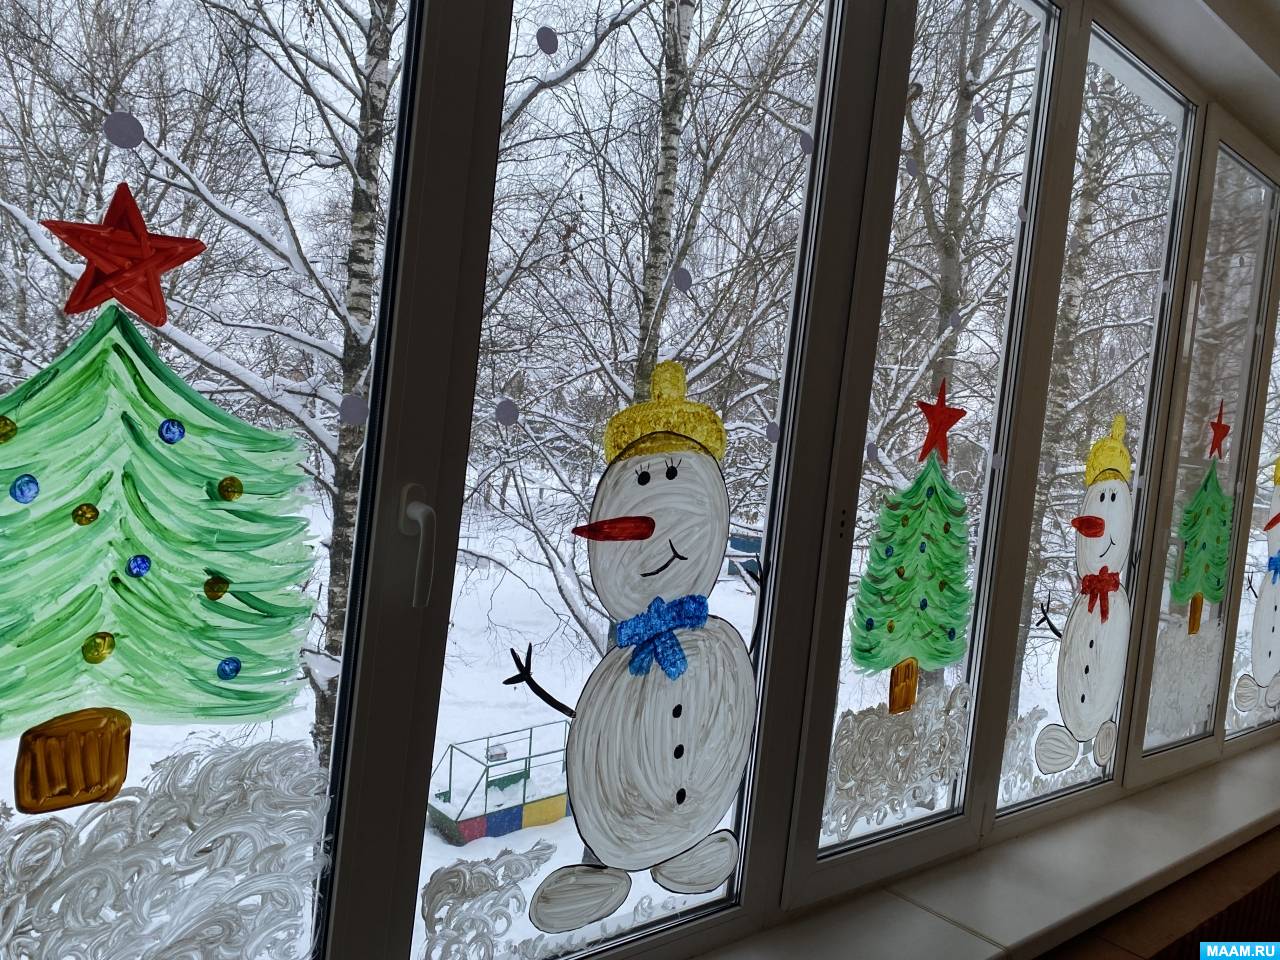 Будет весь дом сиять: как креативно украсить окна к Новому года